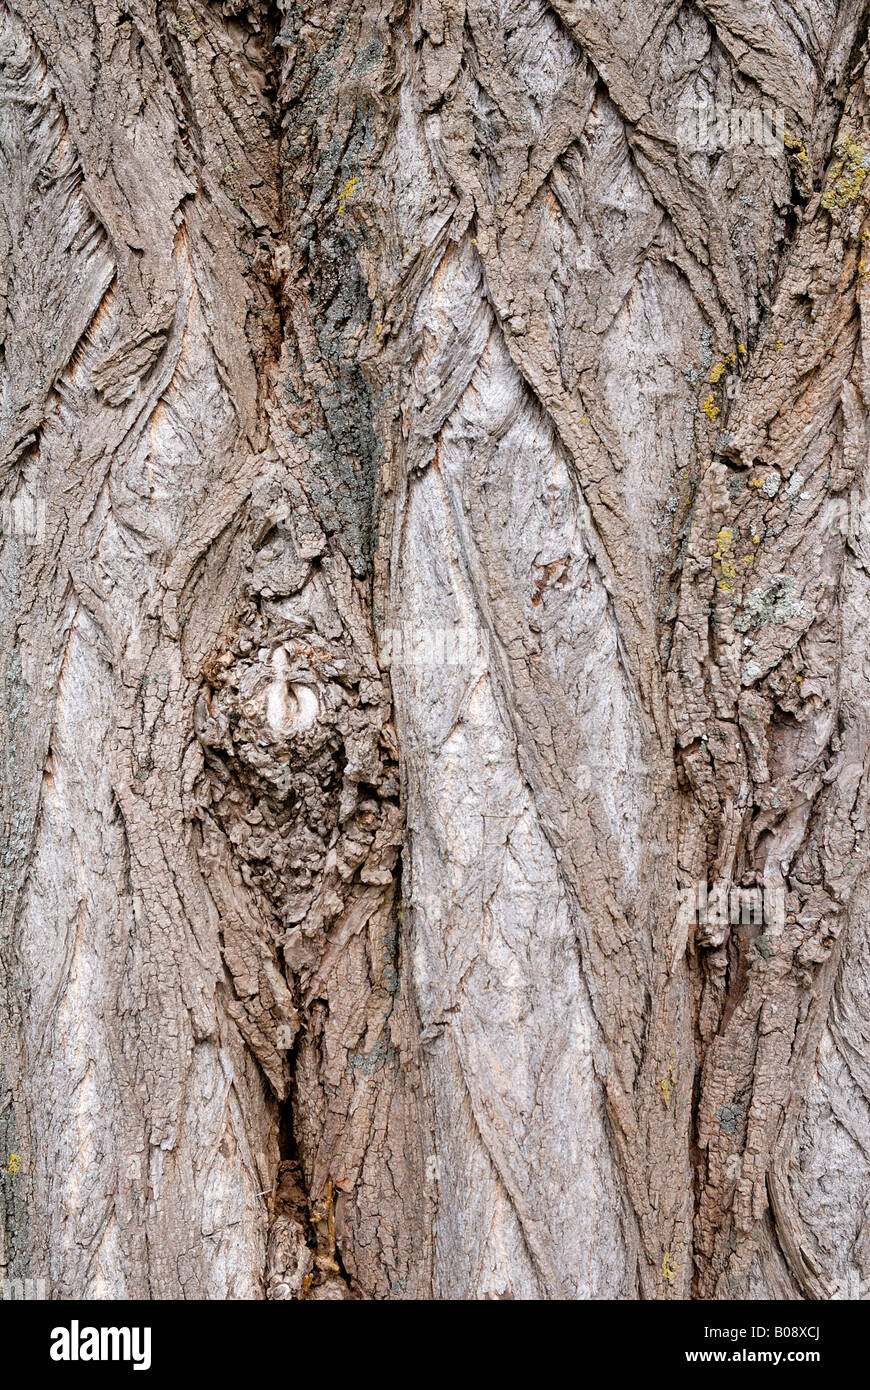 Bark of Black Locust tree (Robinia pseudoacacia) Stock Photo